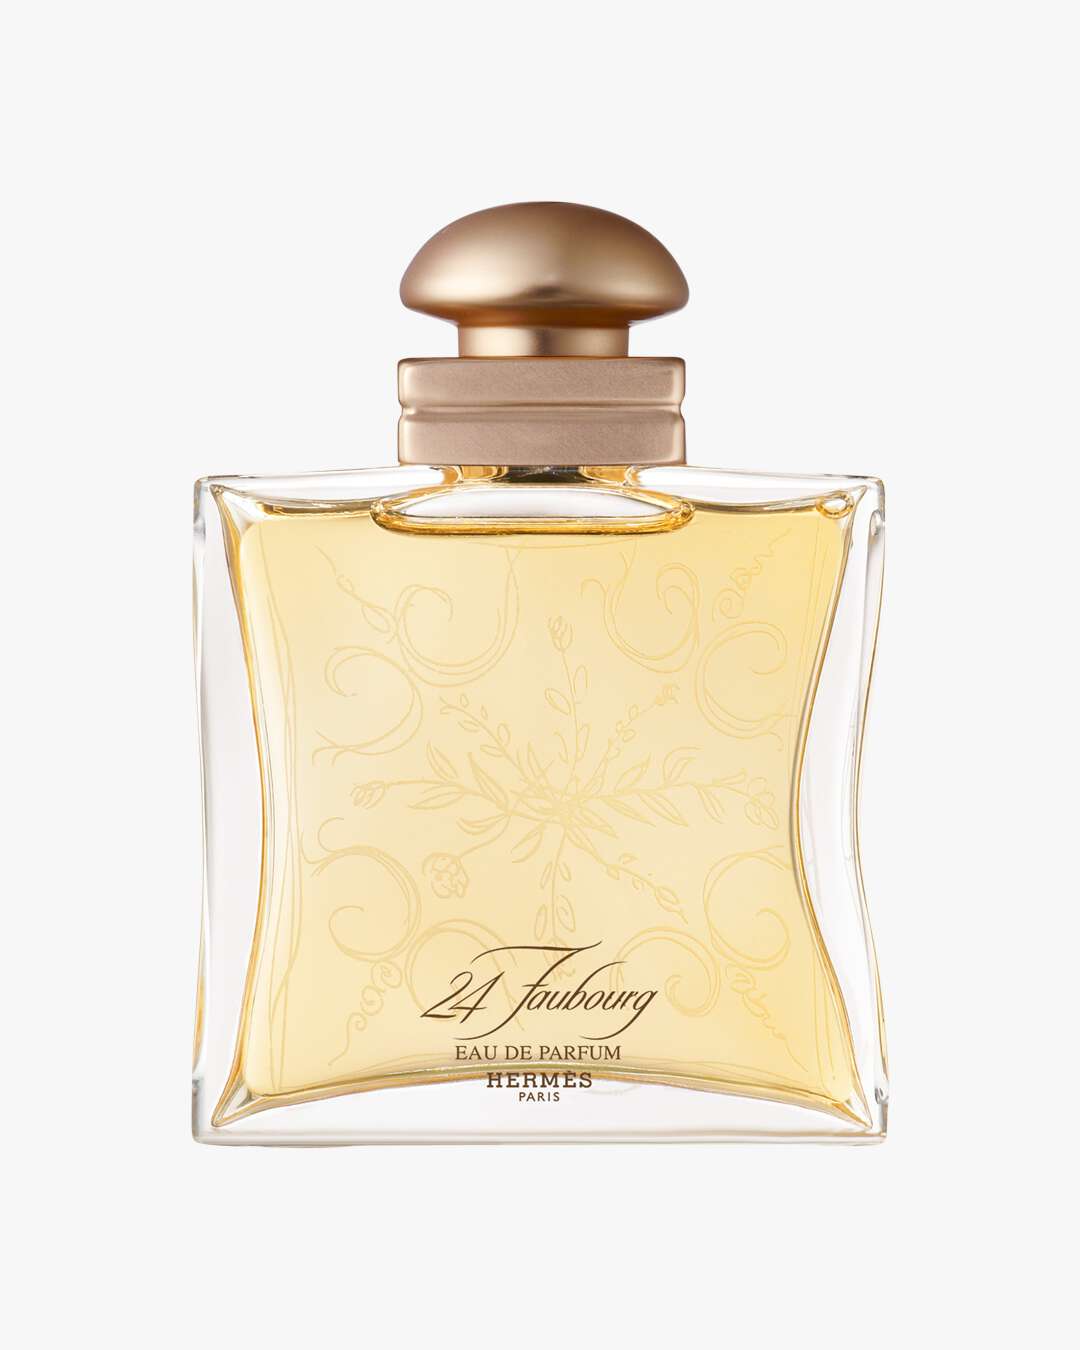 24 Faubourg Eau de Parfum (Størrelse: 50 ML)